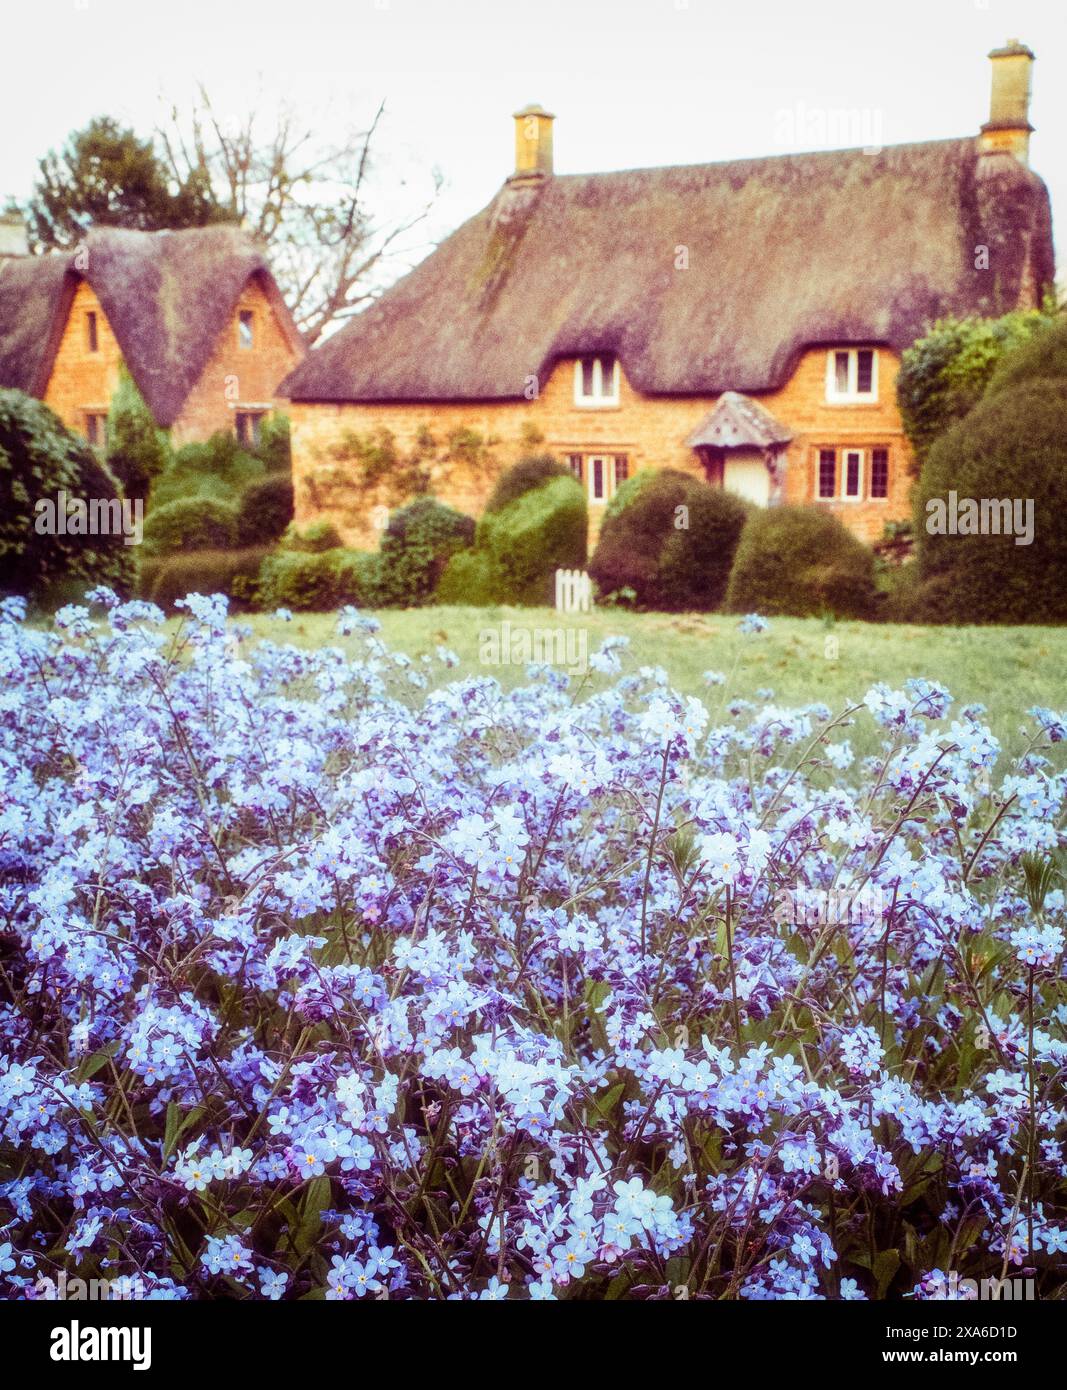 Les cottages de chaume typiques des Cotswold dans le village endormi de Great Tew, Oxfordshire Banque D'Images